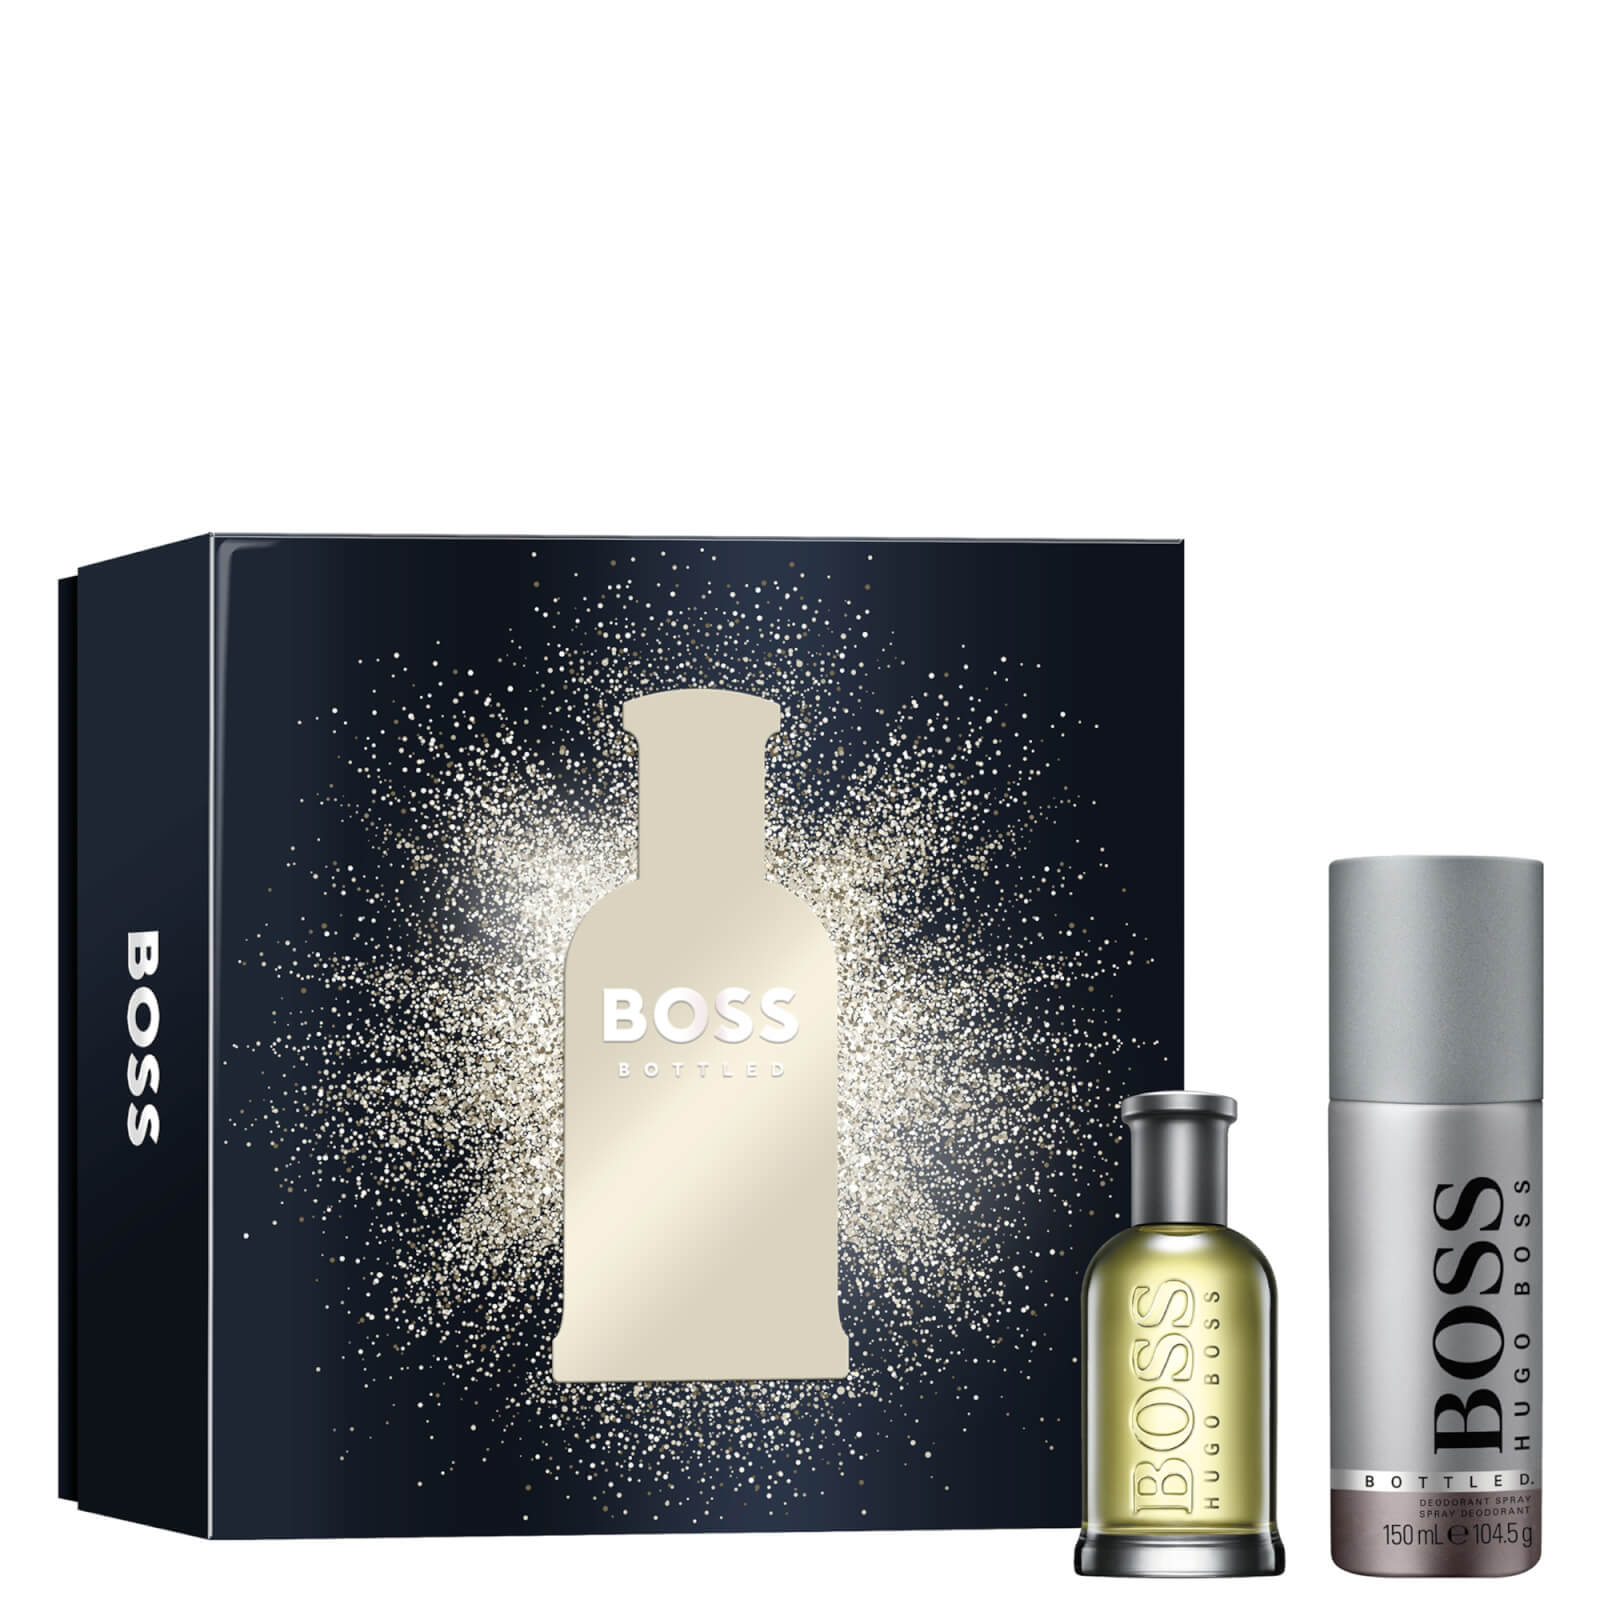 Hugo Boss Boss Bottled For Him Eau De Toilette 50ml + Deodorant 150ml Giftset In White